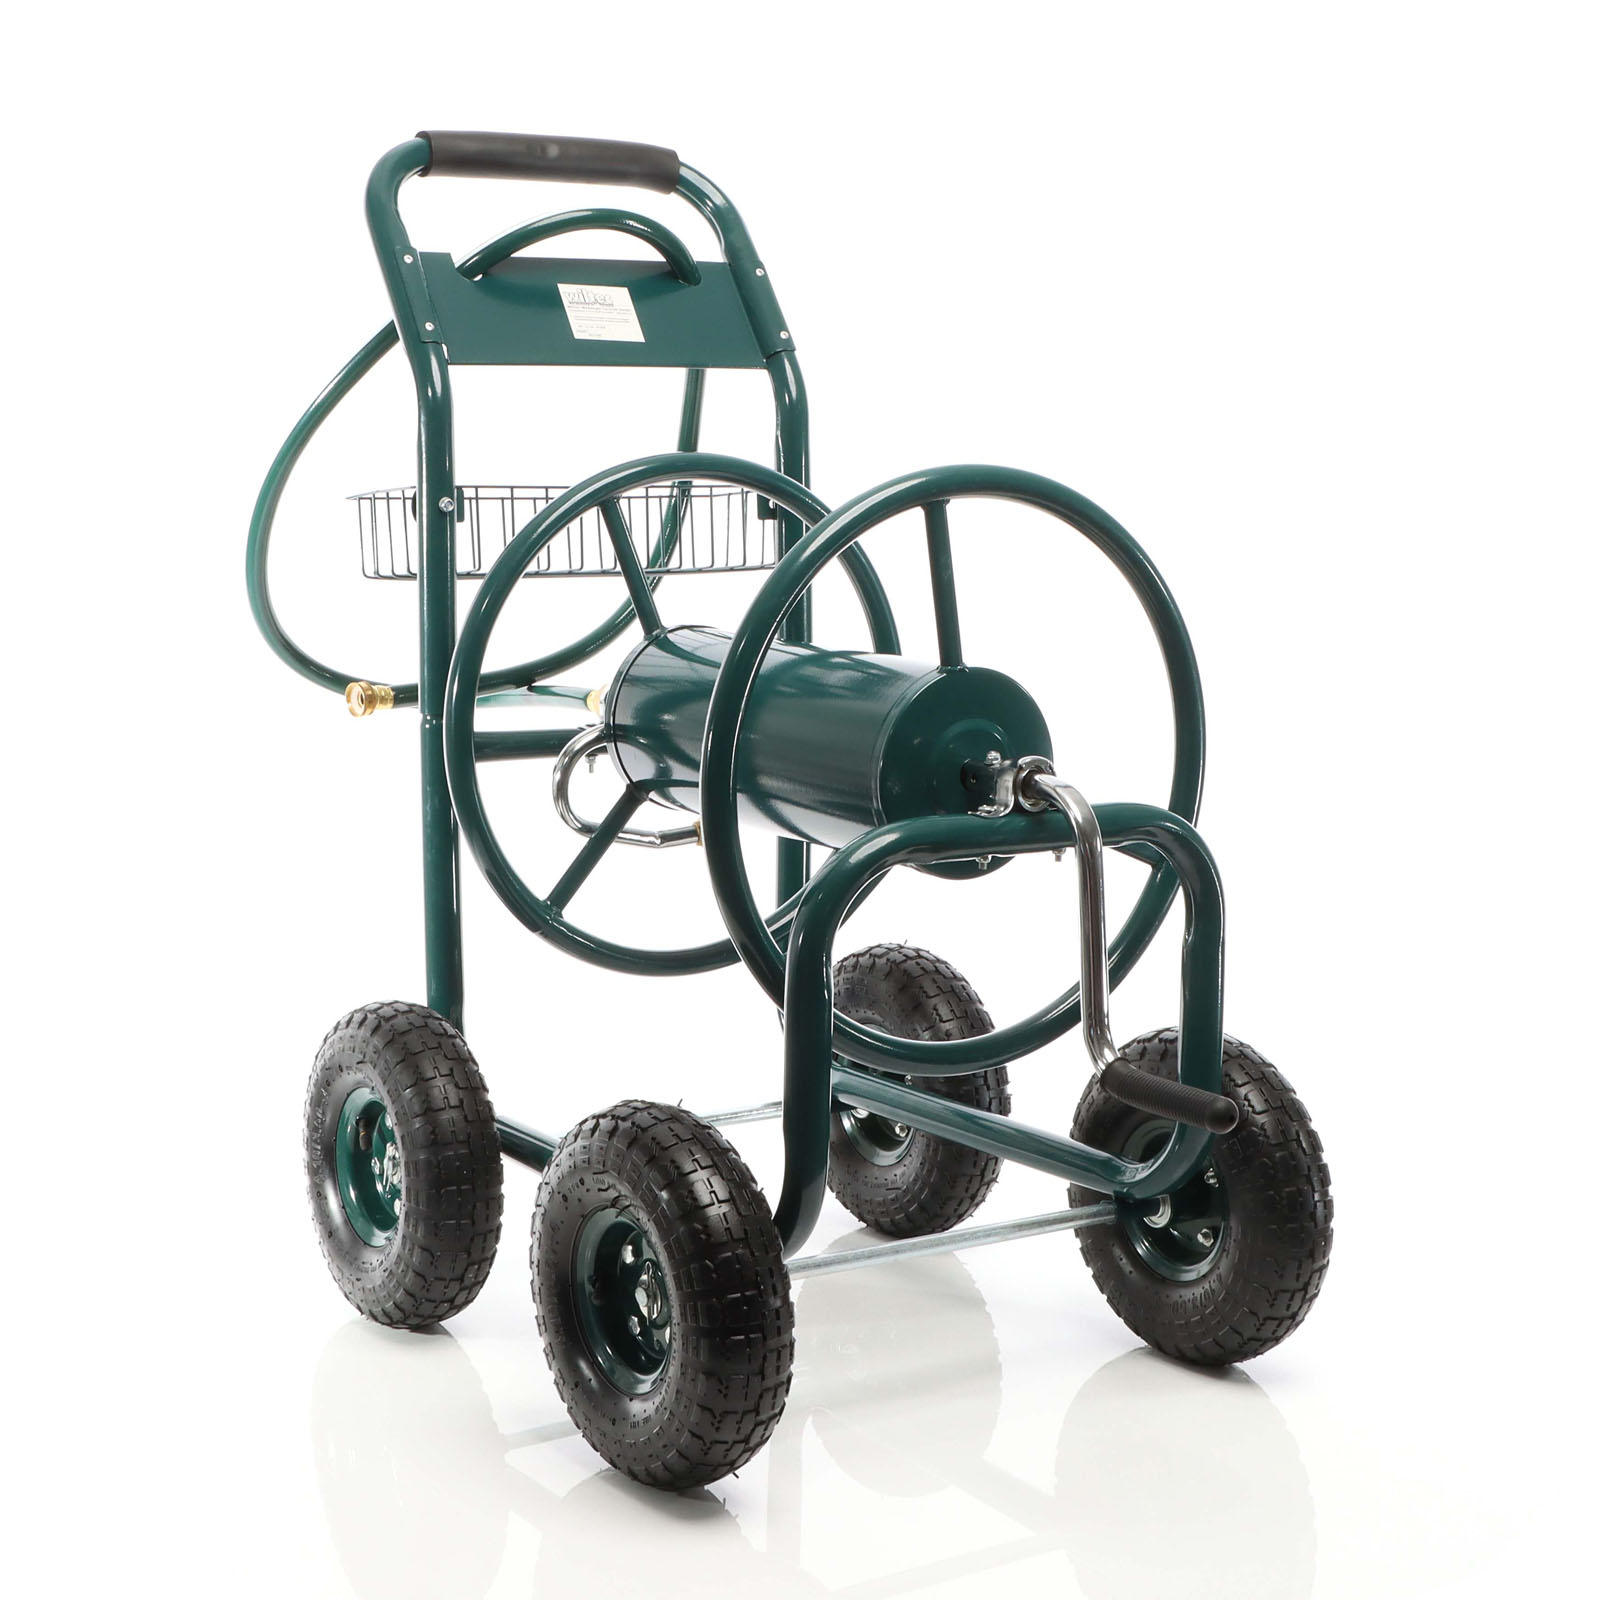 Hose Reel Cart with Basket Wheeled Hose Reel Holder for Outdoors